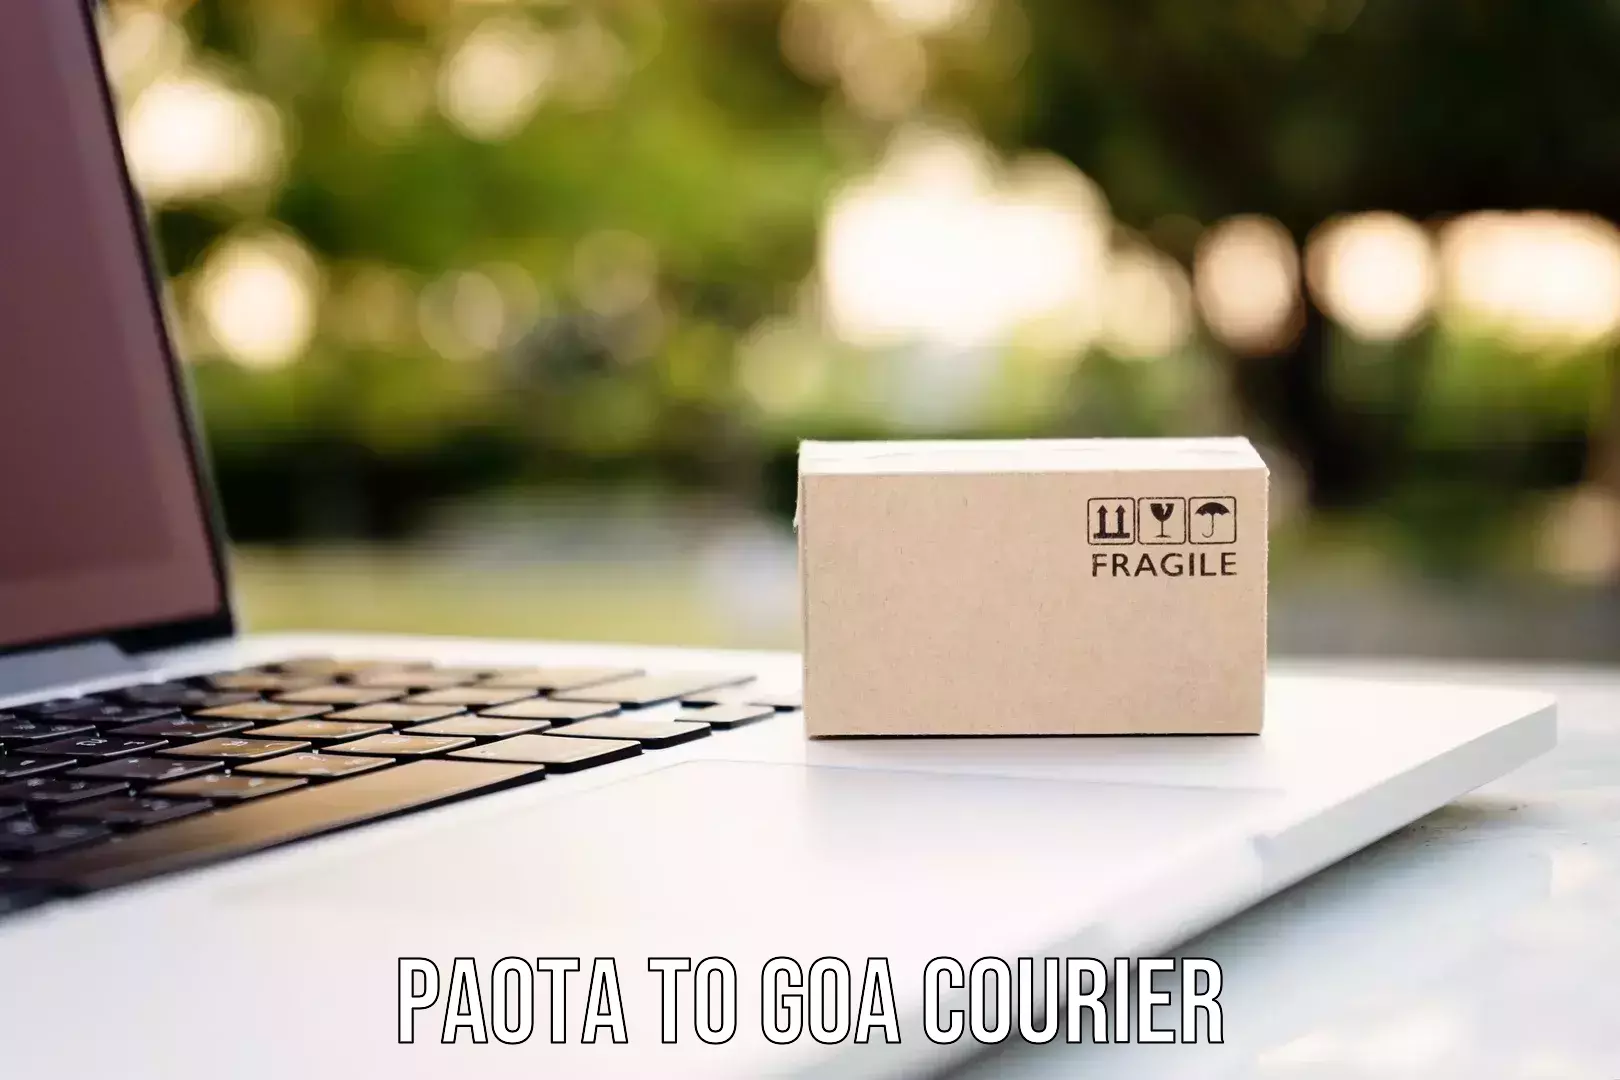 Digital courier platforms Paota to Mormugao Port